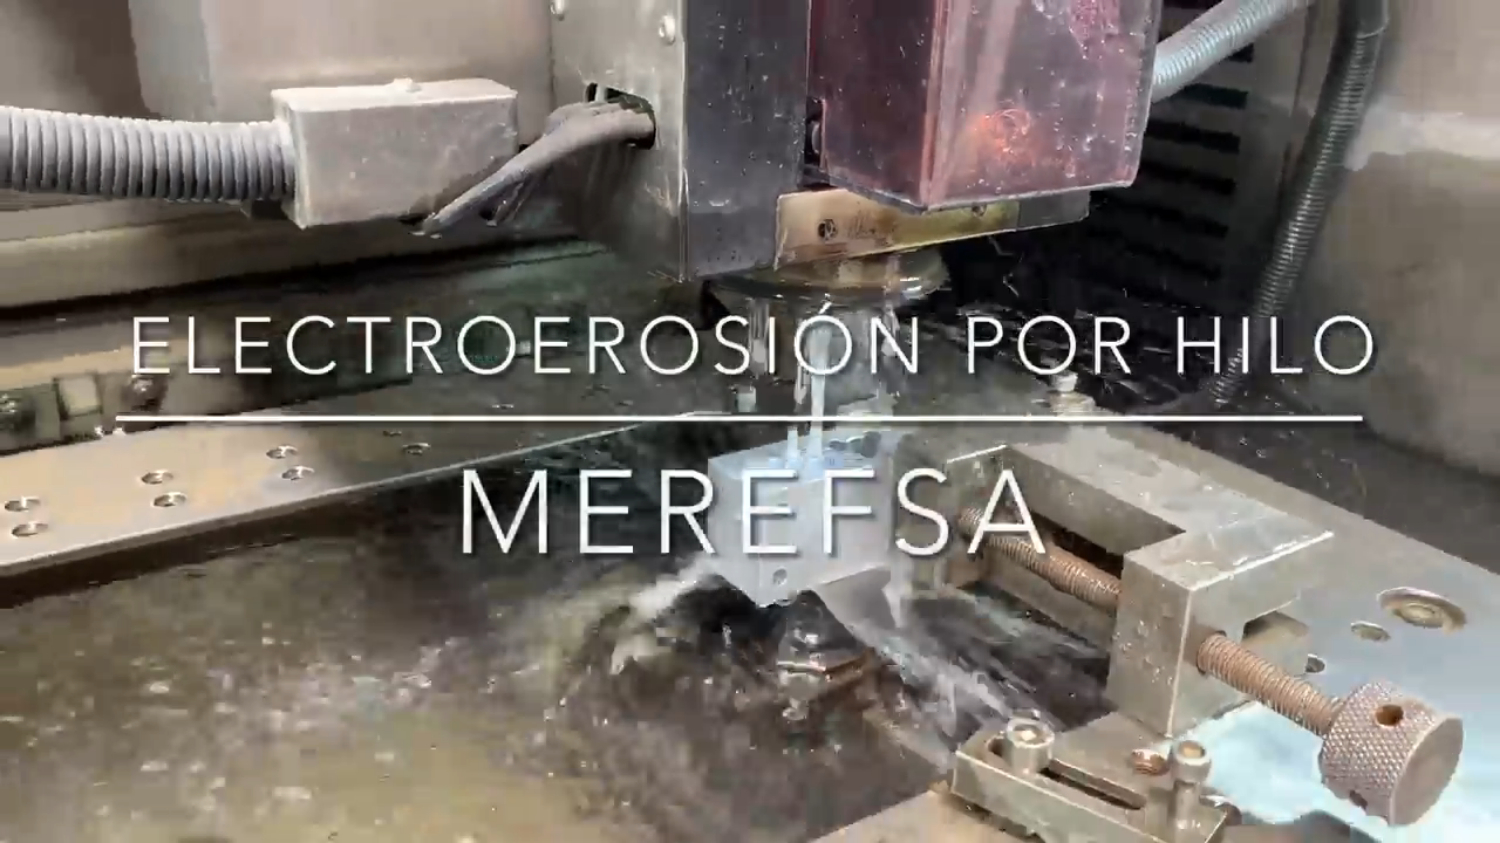 Processus d'usinage dans MEREFSA : WIRE EDM